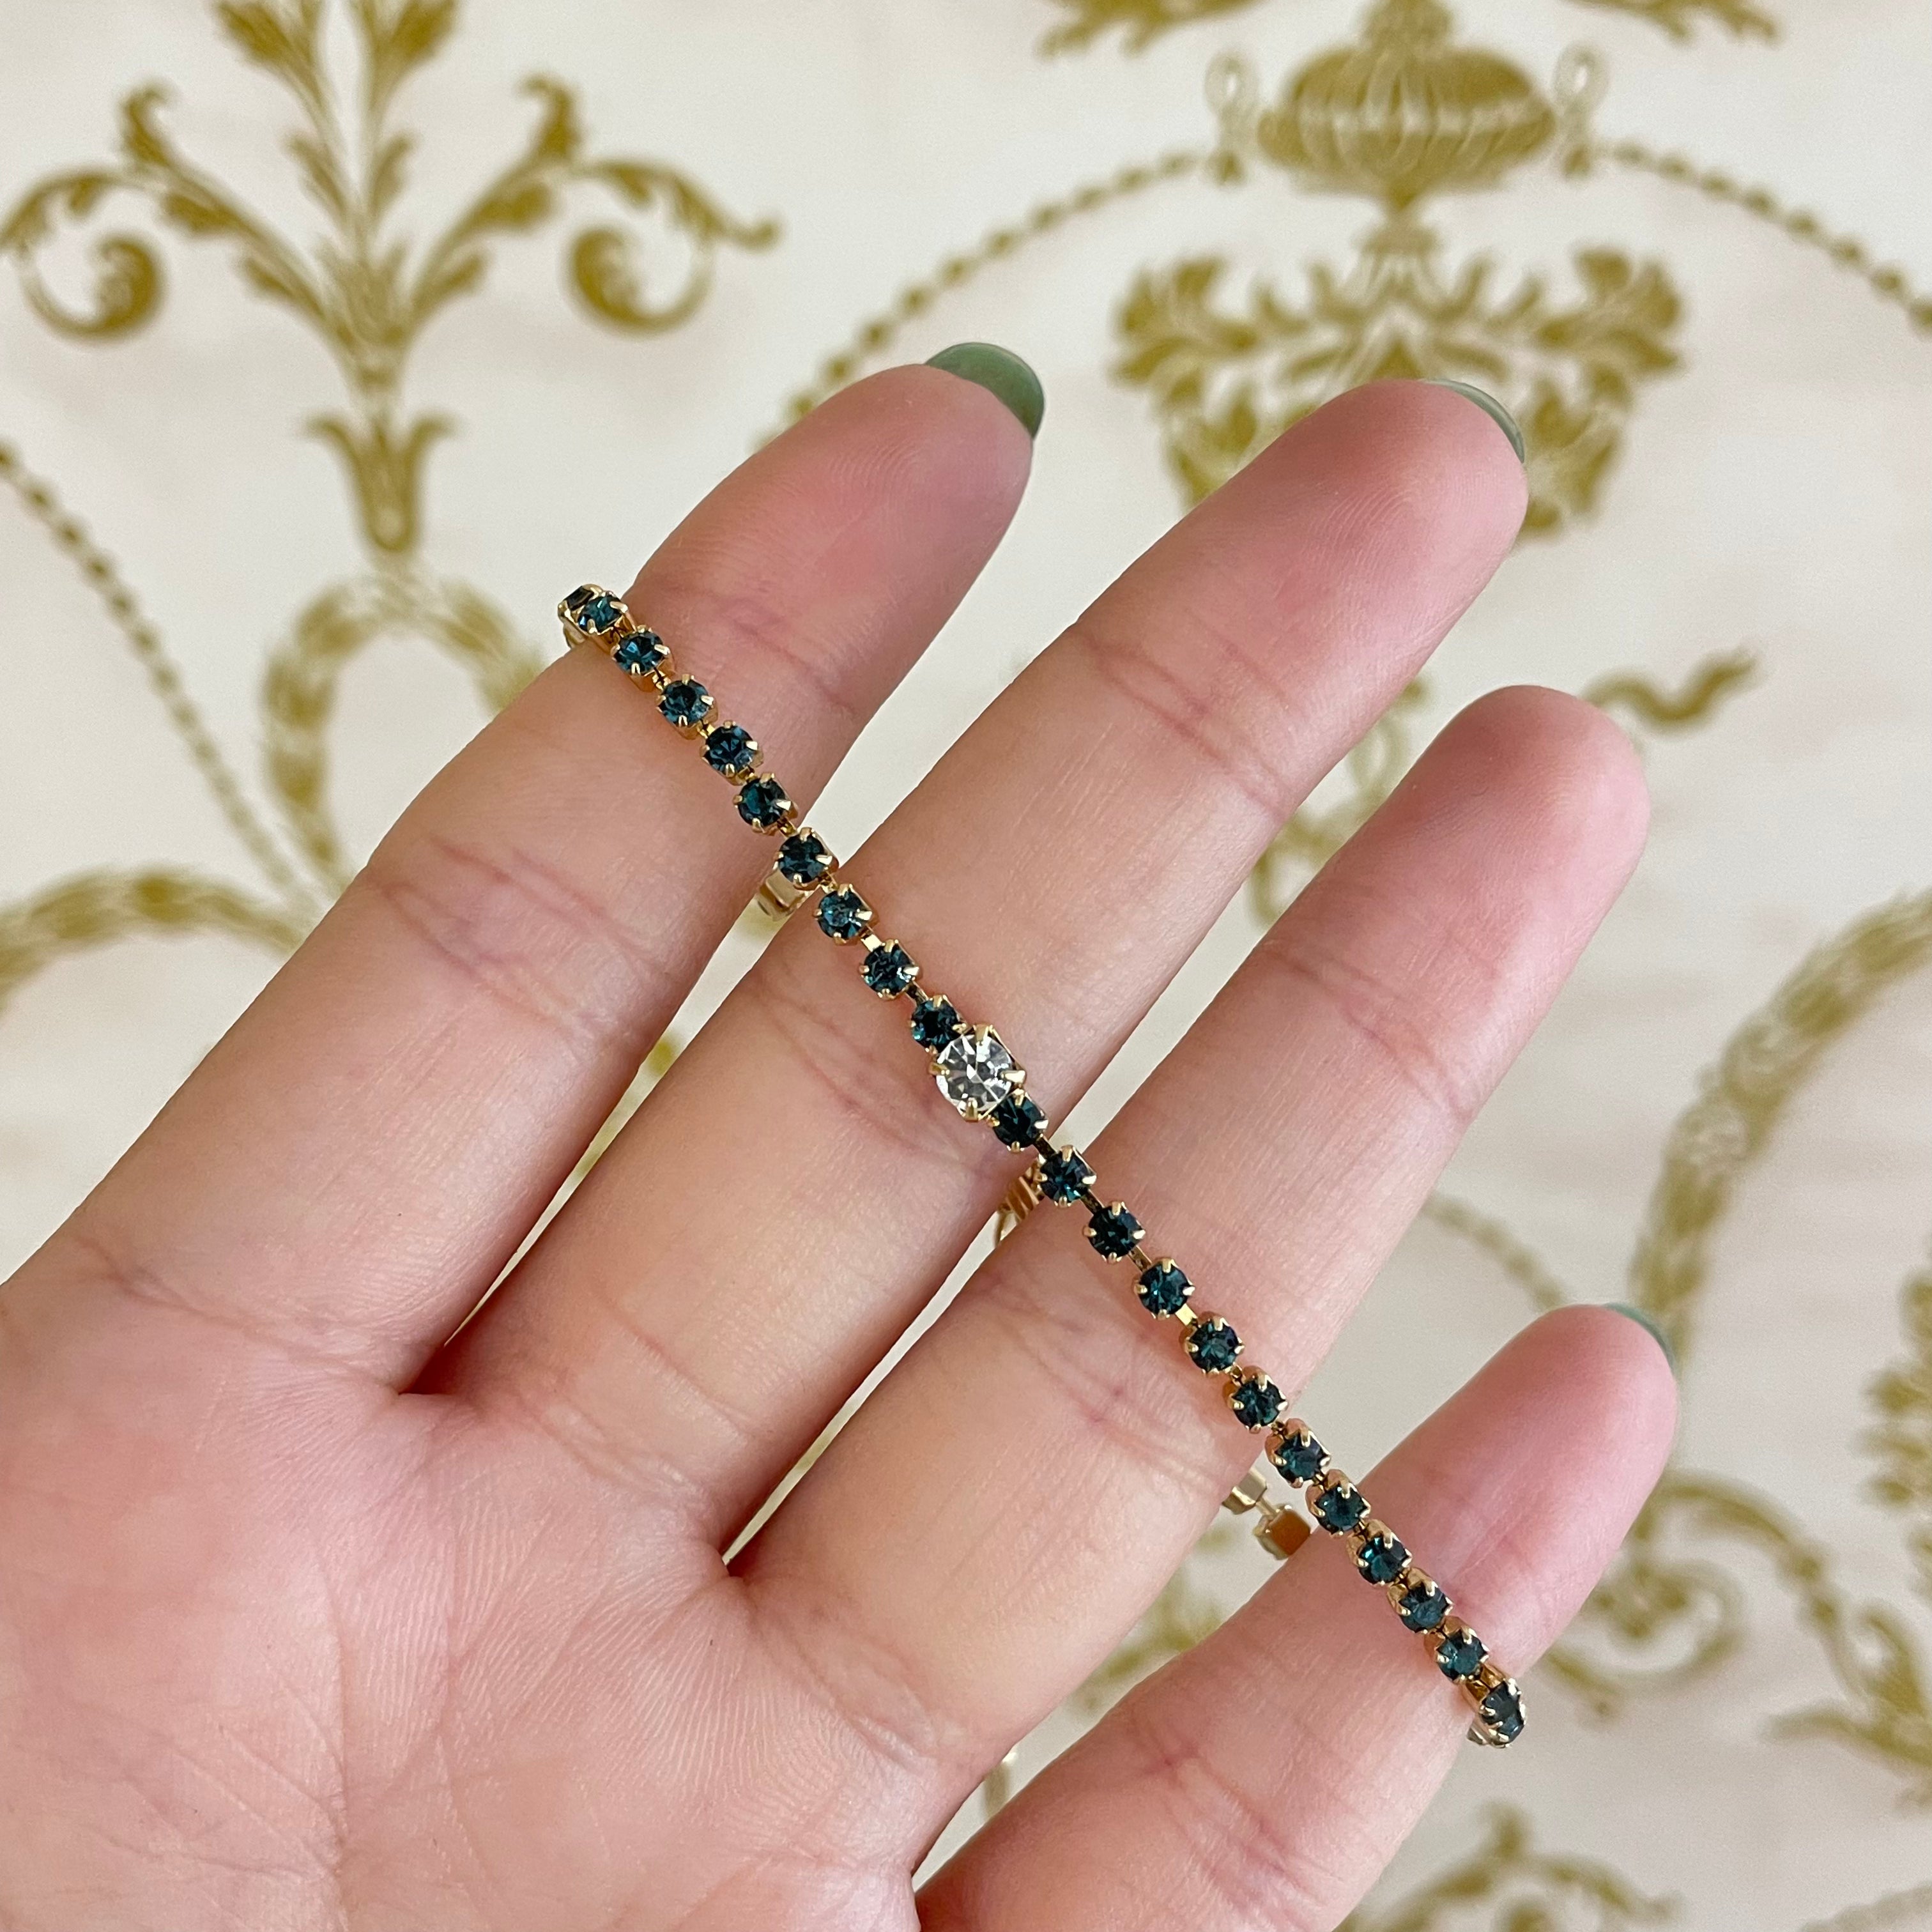 Navy blue Swarovski crystal bracelet